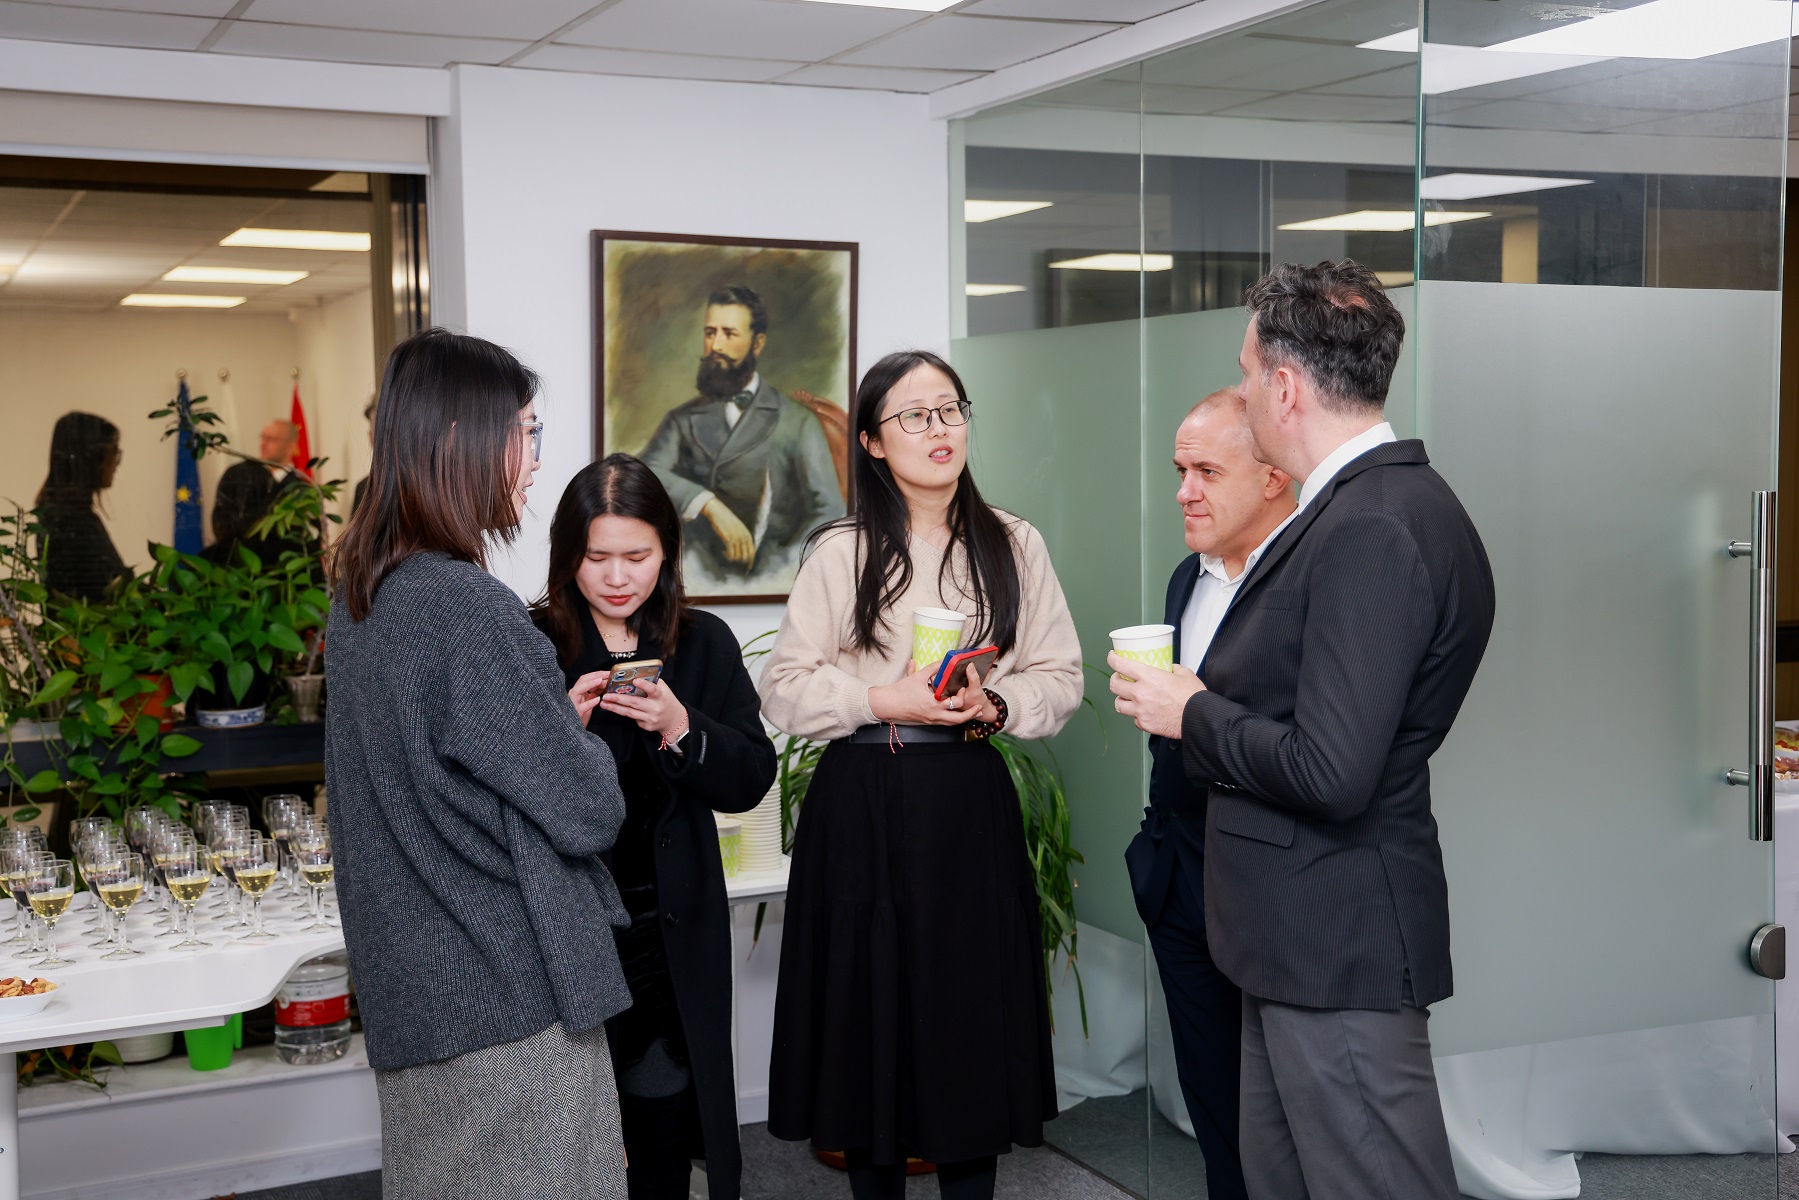 Българската общност в консулския окръг на генералното консулство в Шанхай отбеляза националния празник на България